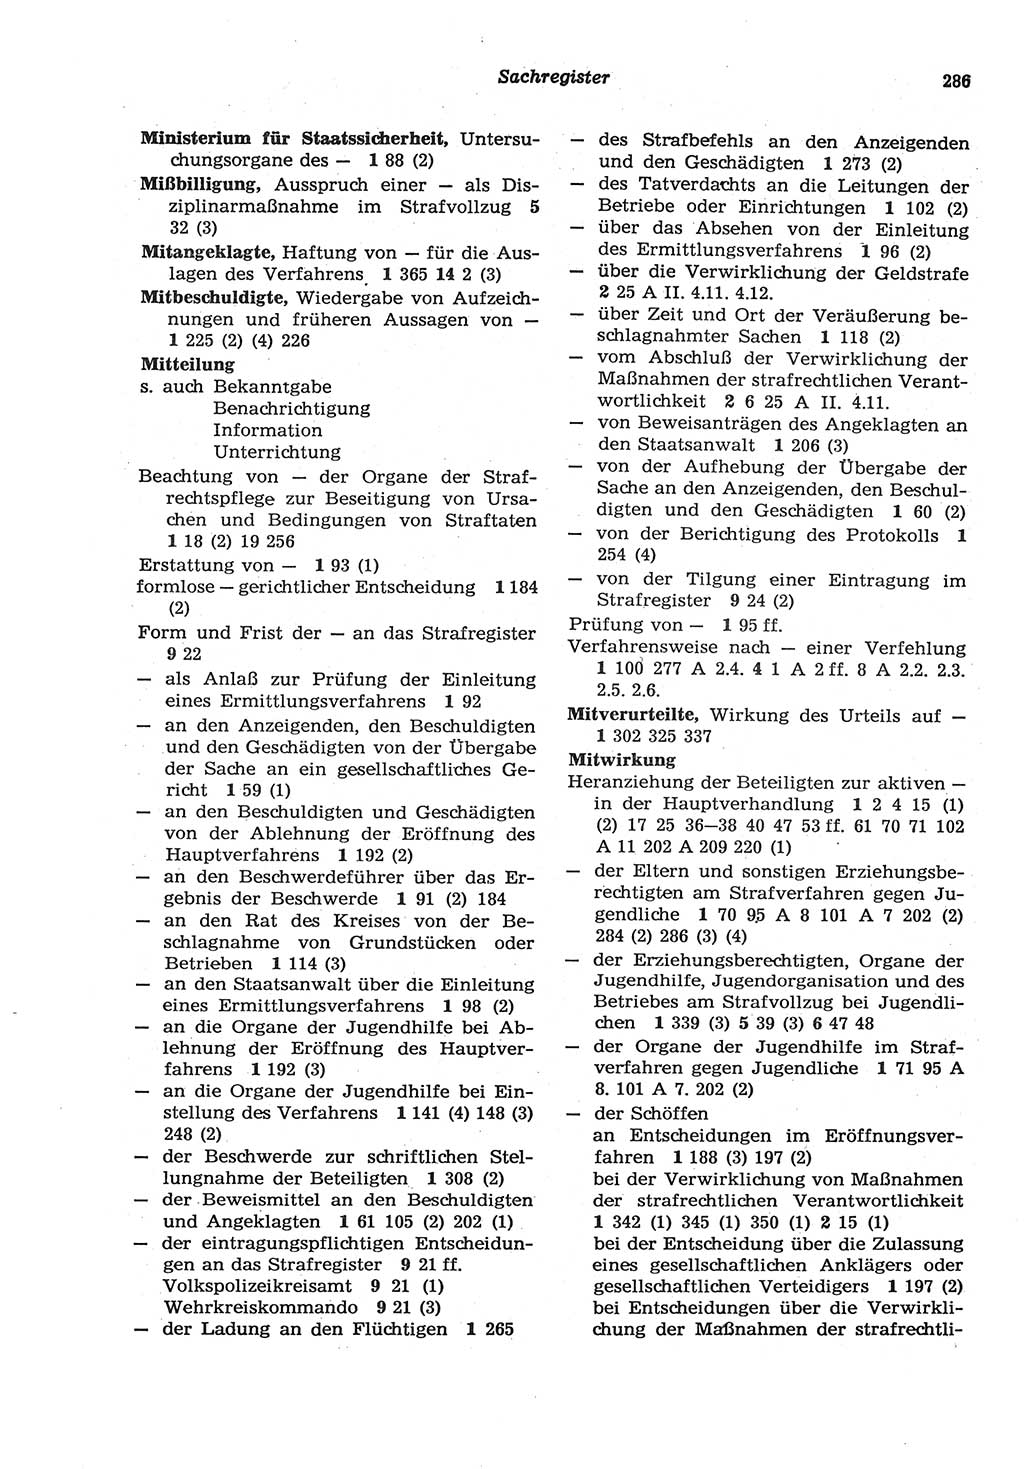 Strafprozeßordnung (StPO) der Deutschen Demokratischen Republik (DDR) sowie angrenzende Gesetze und Bestimmungen 1977, Seite 286 (StPO DDR Ges. Best. 1977, S. 286)